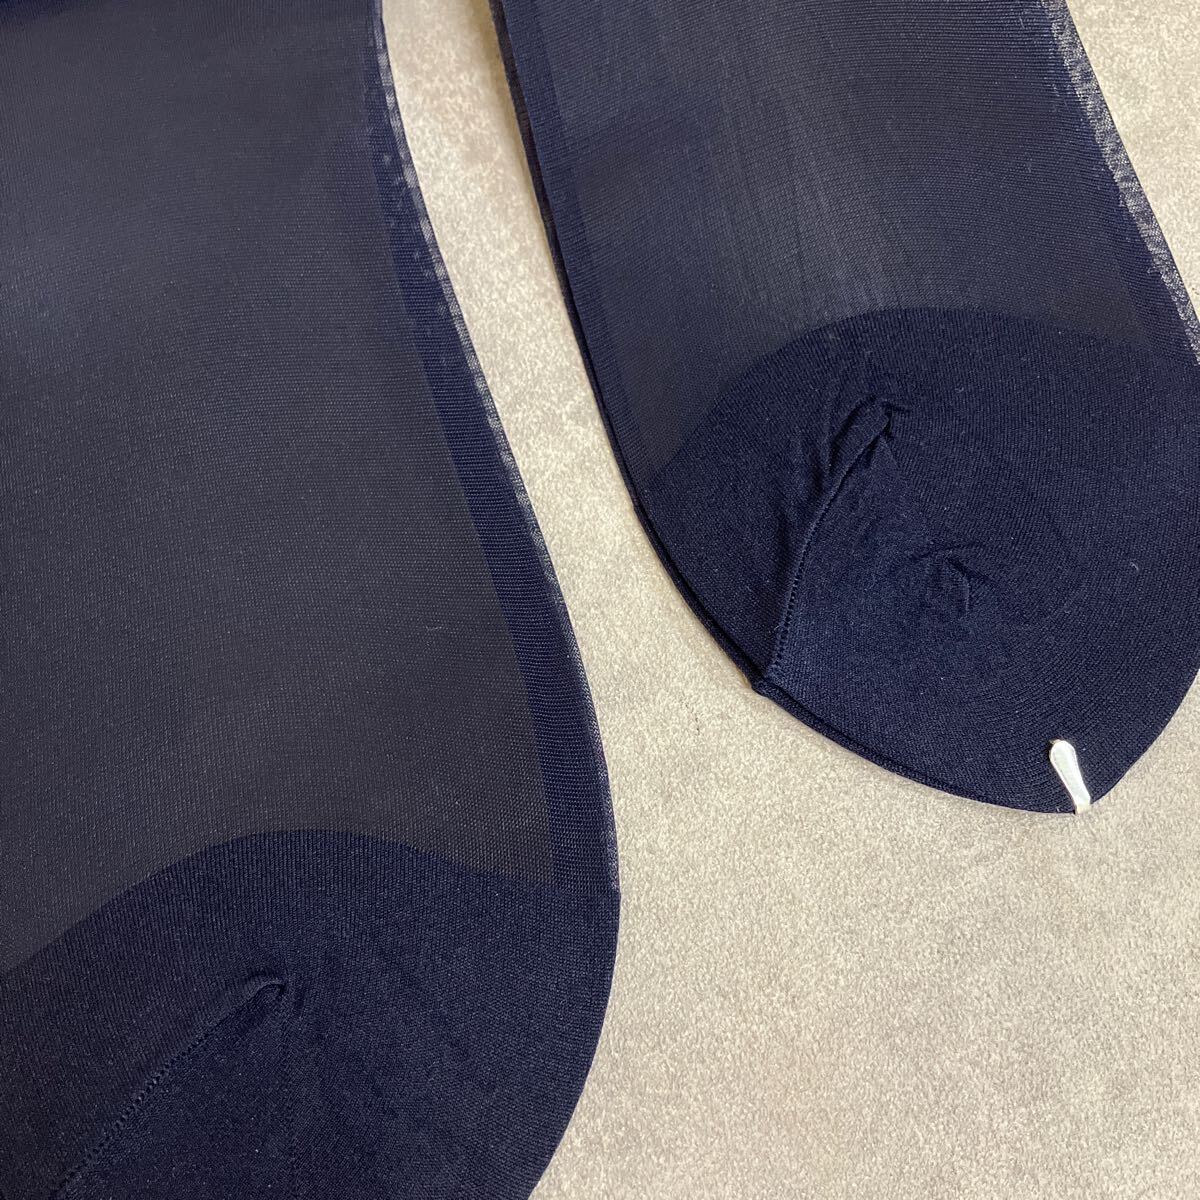  Showa Retro не использовался товар 3 пара совместно High Gauge высокий мера прозрачный глянец джентльмен носки тонкий нейлон 100% темно-синий чёрный размер 25cm сделано в Японии 